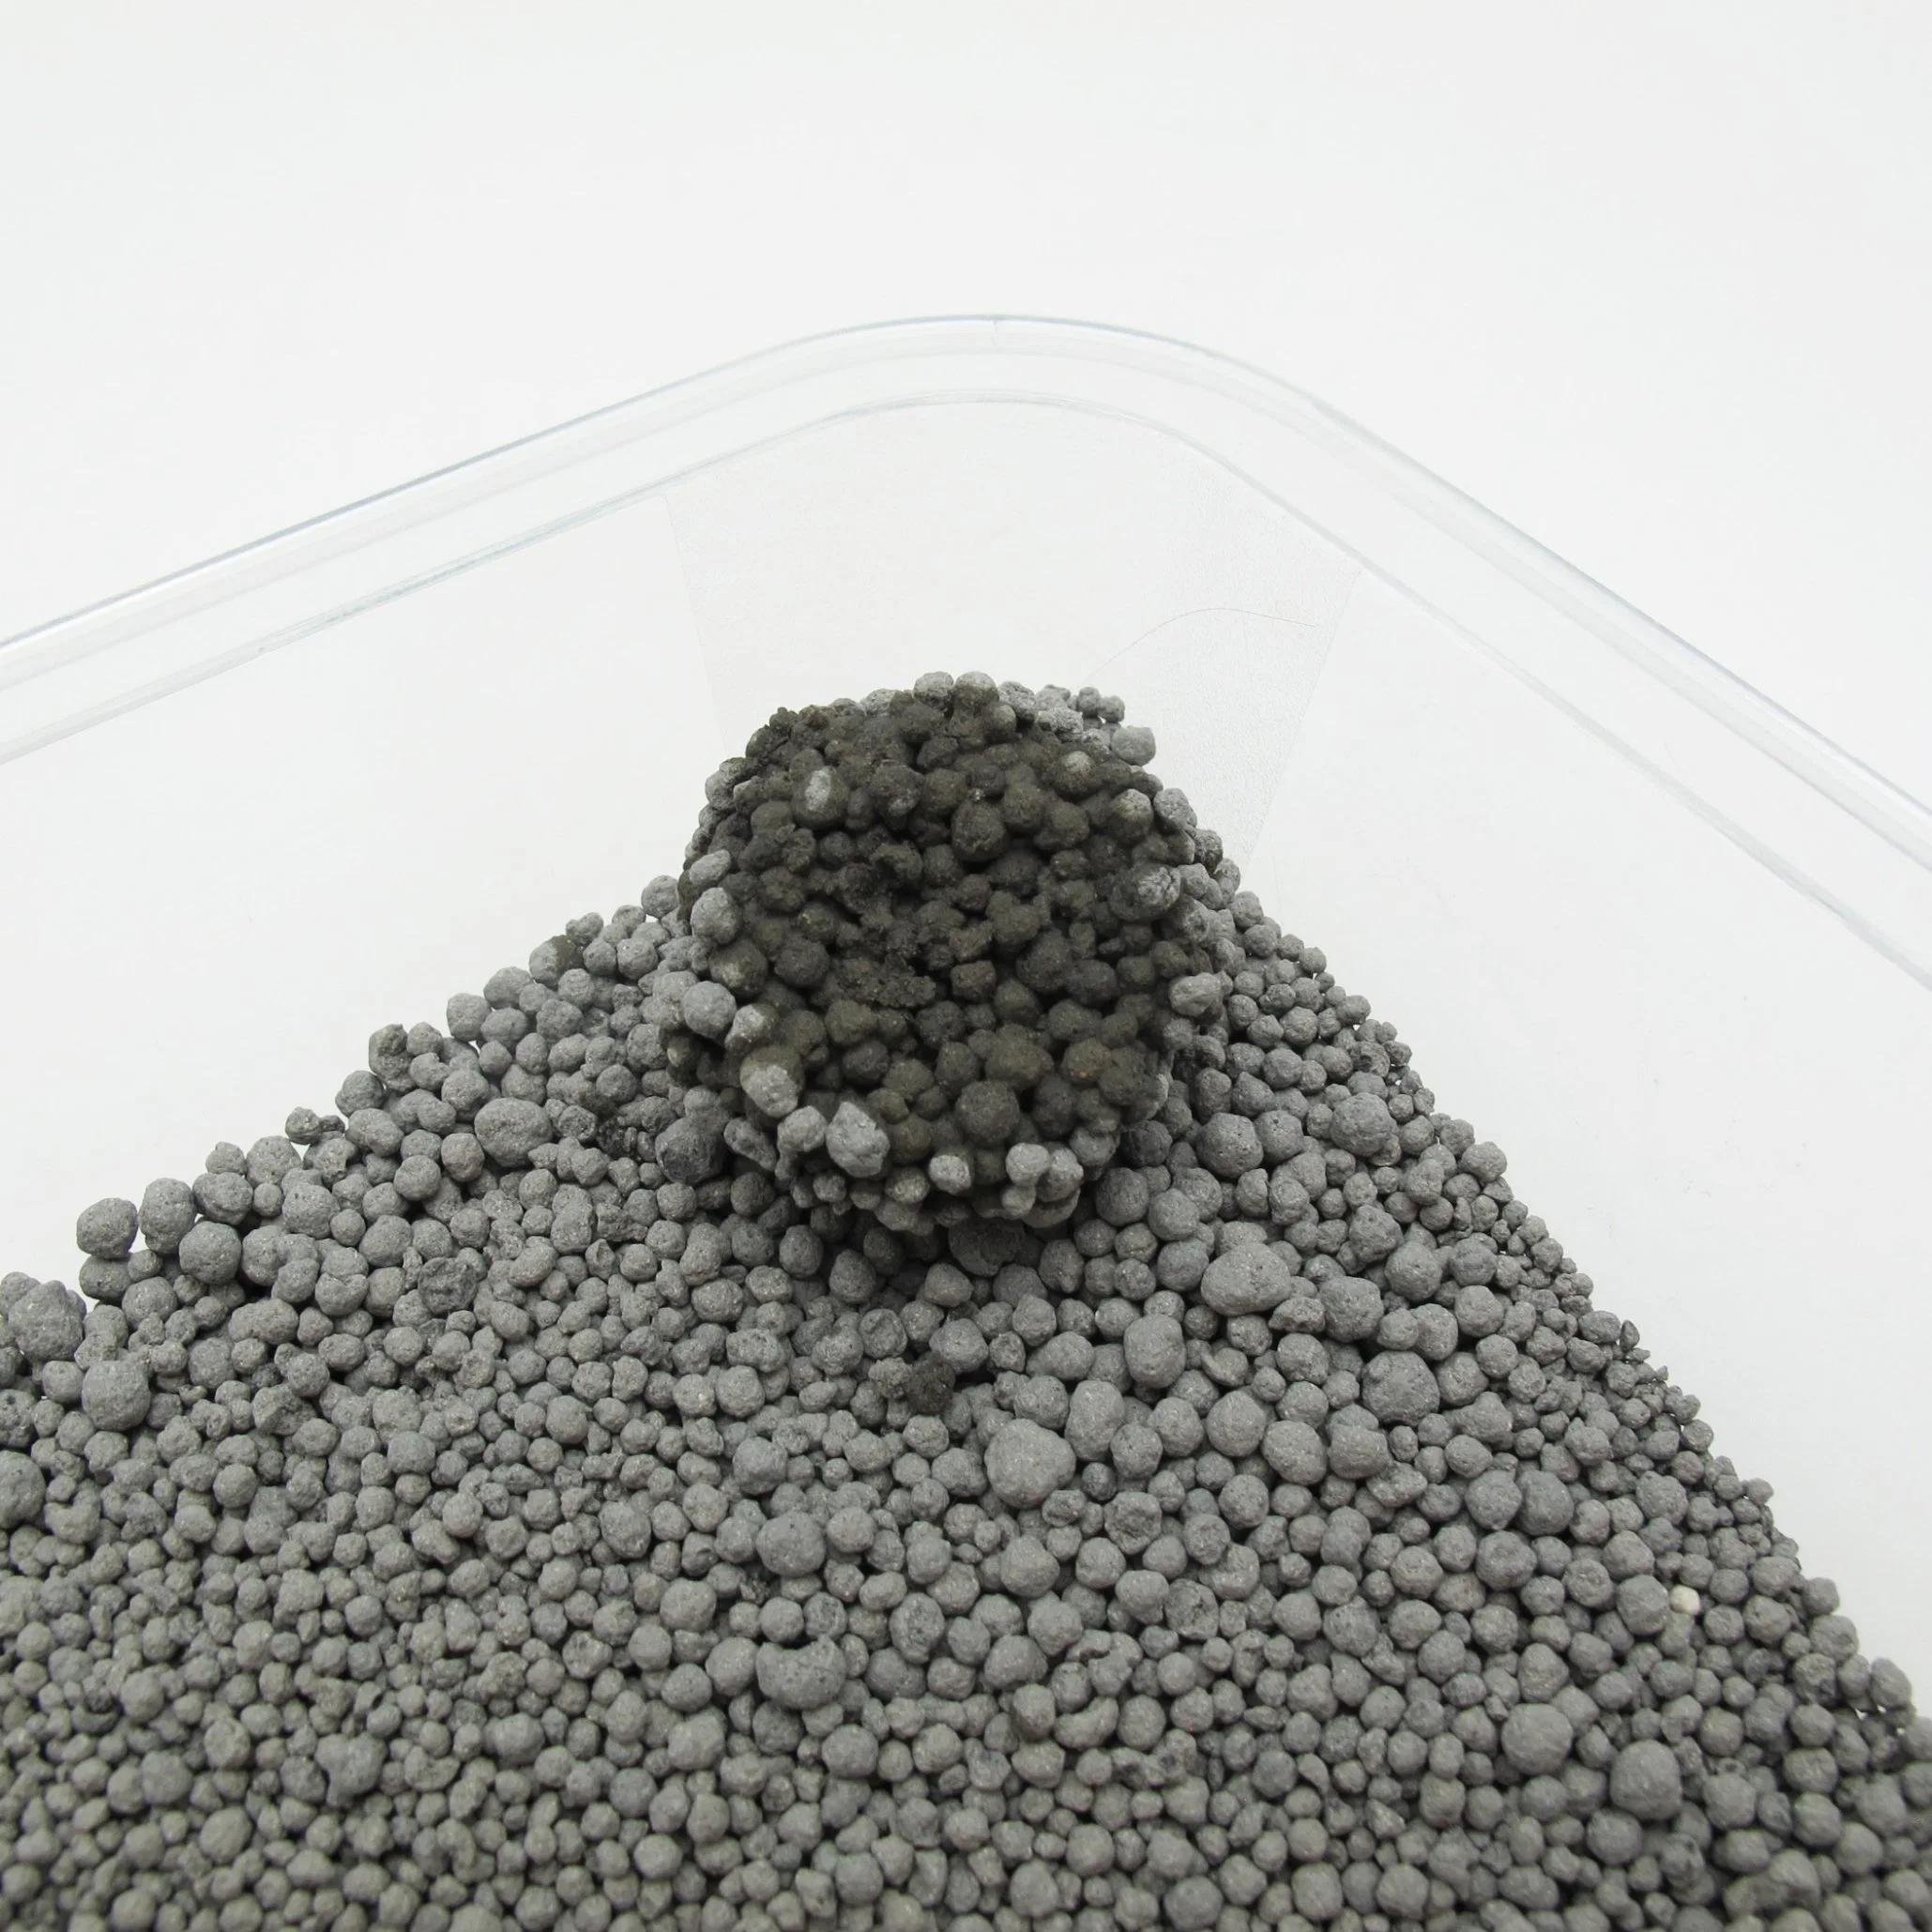 والروائح الكريهة للبول سريعة الامتصاص يسهل سفنها بمقدار 4 مم من الكربون النشط كرة الرمال 0.5-2mm Bentonite الطين المعادن الرمال Cat المراحيض منتج